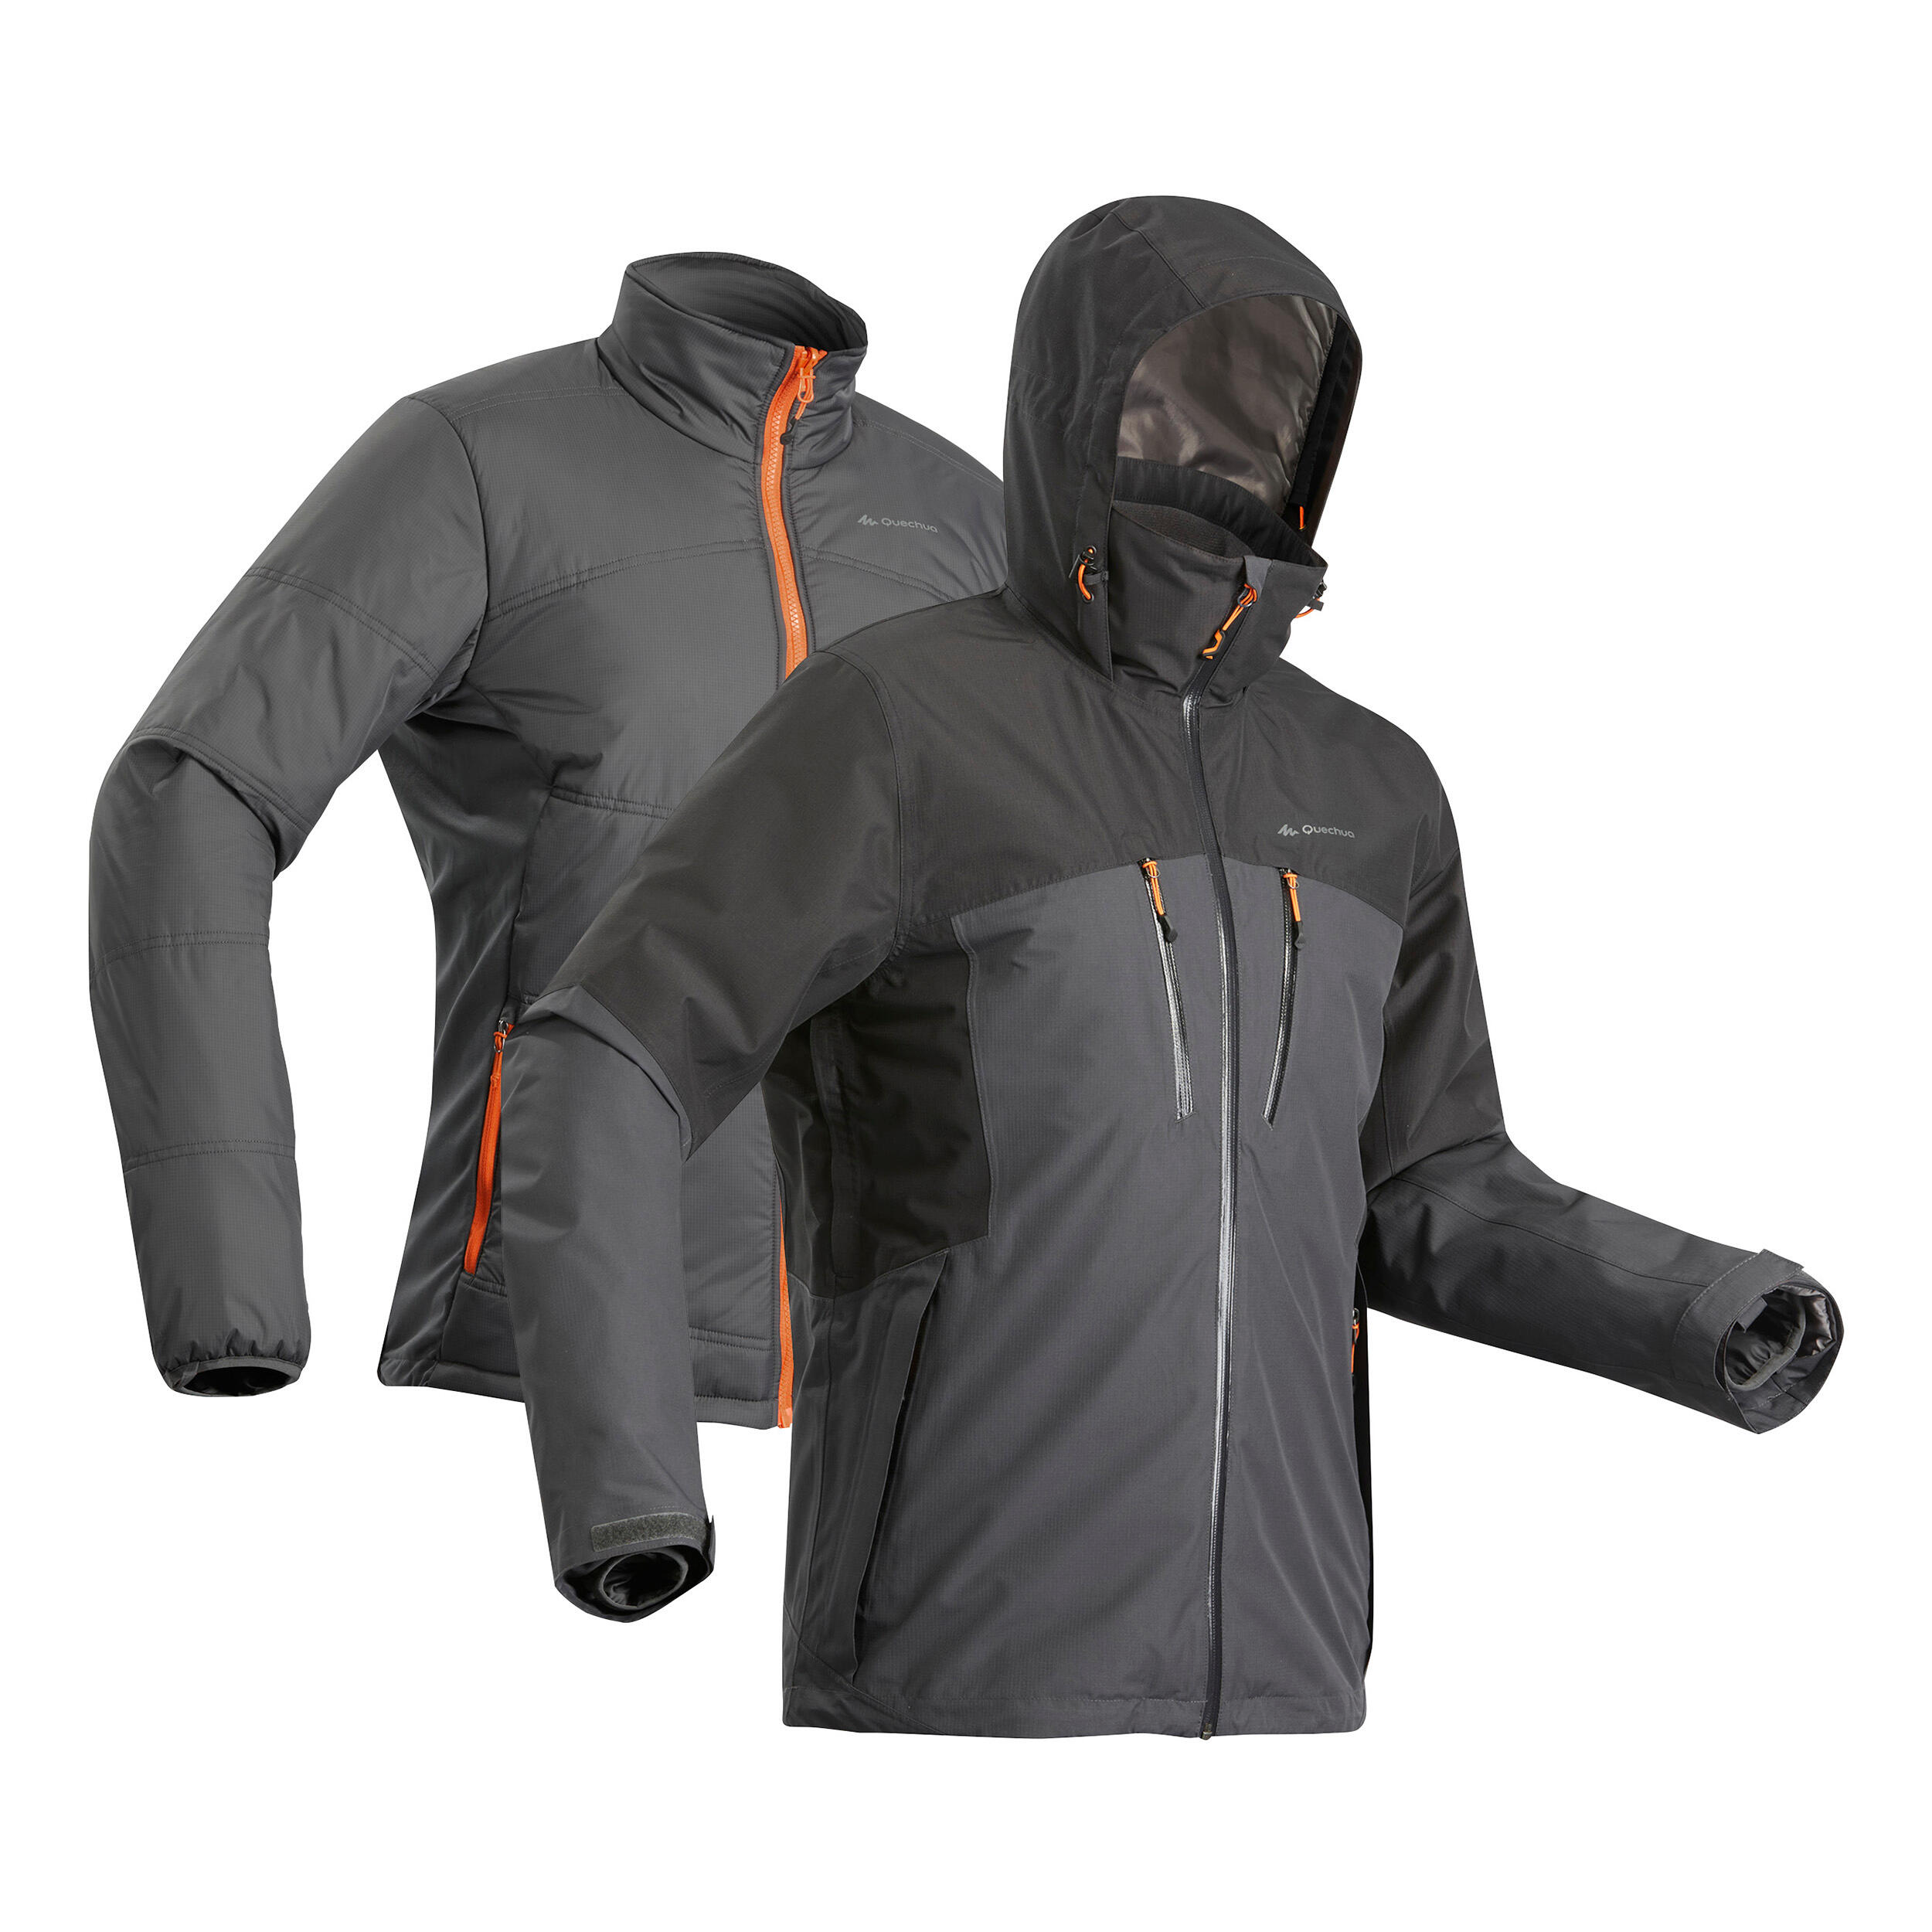 Men's 3-in-1 Waterproof Travel Trekking Jacket Travel 500 -10°C - Black | Trekking  jacket, Hiking jacket, Jackets